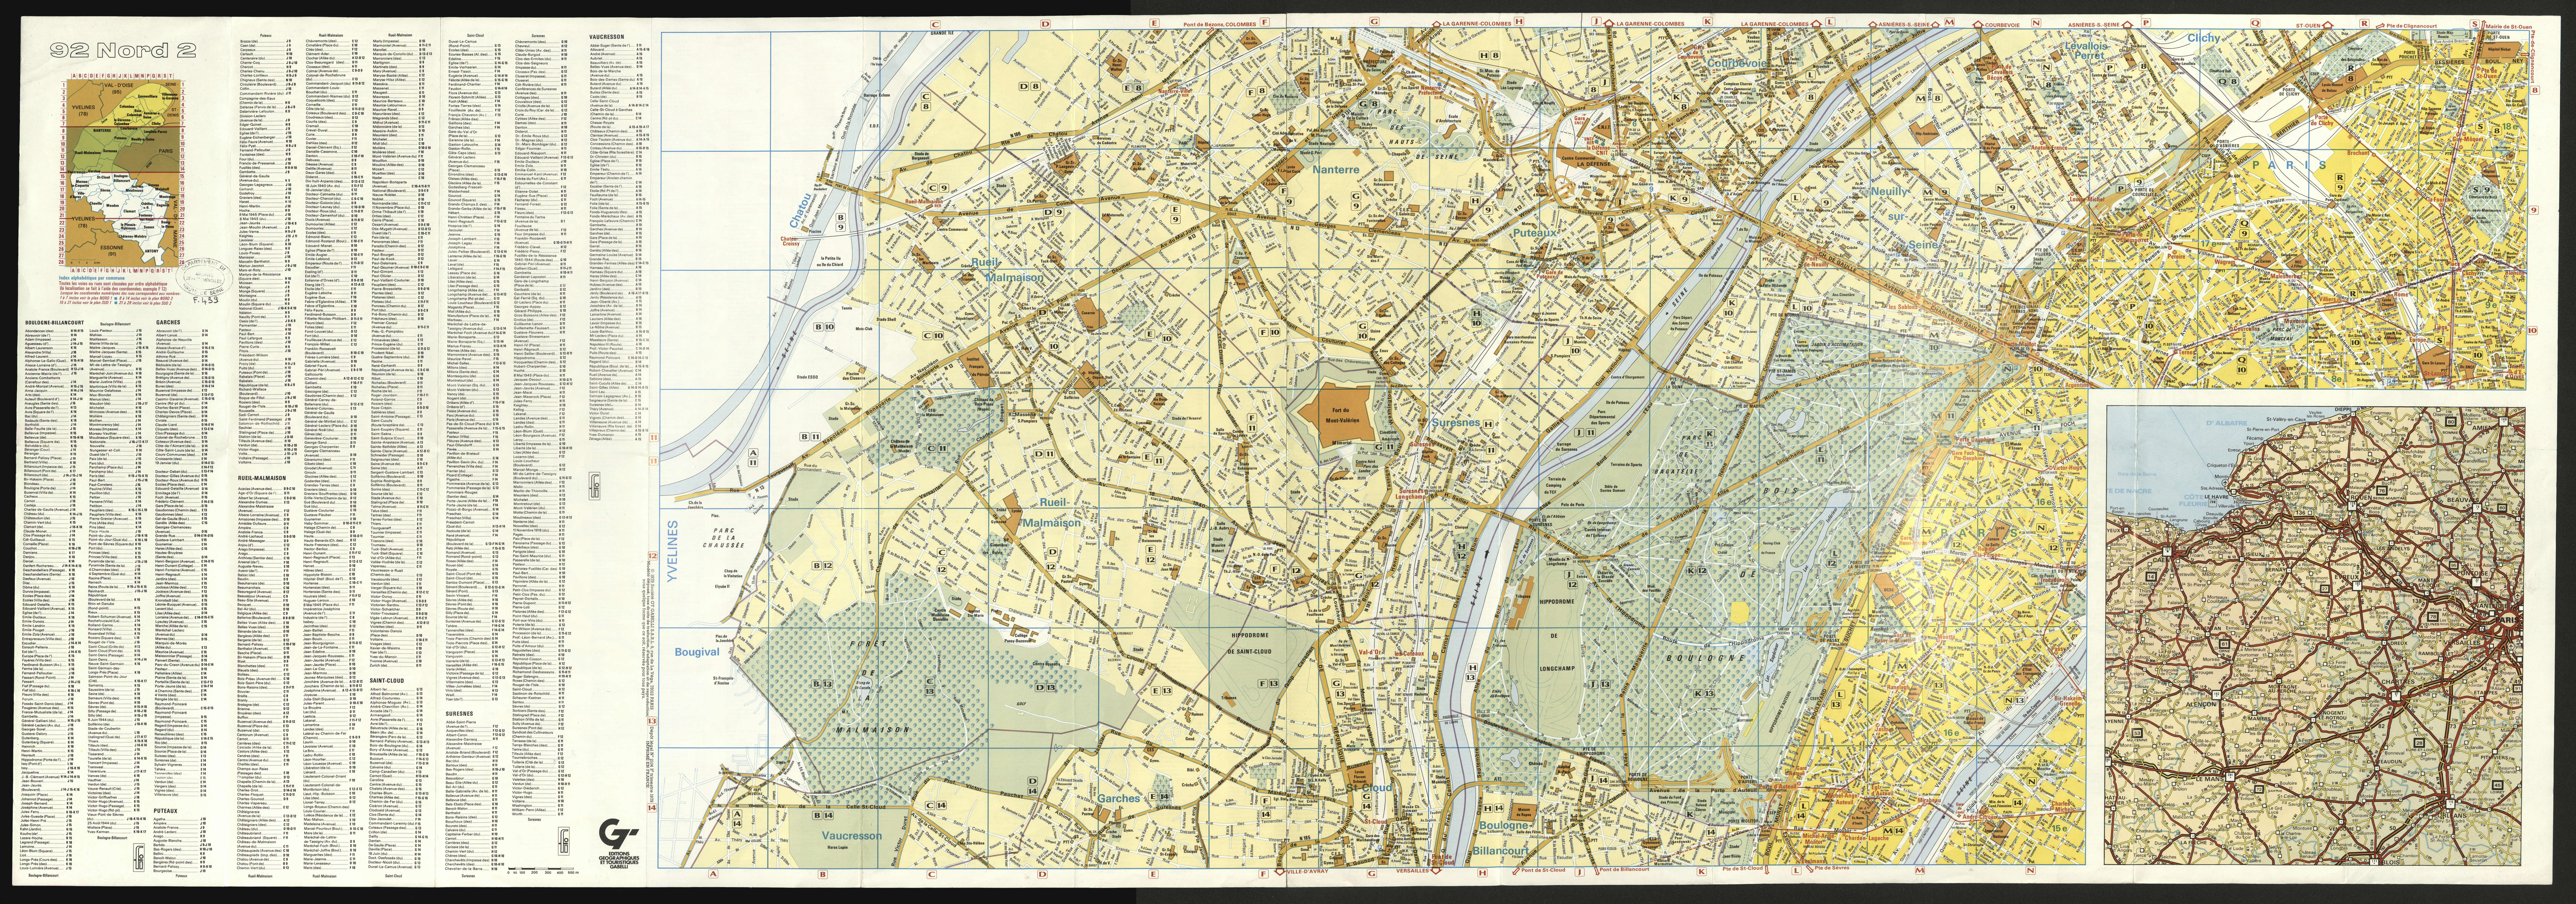 Hauts-de-Seine : partie nord. 1979.